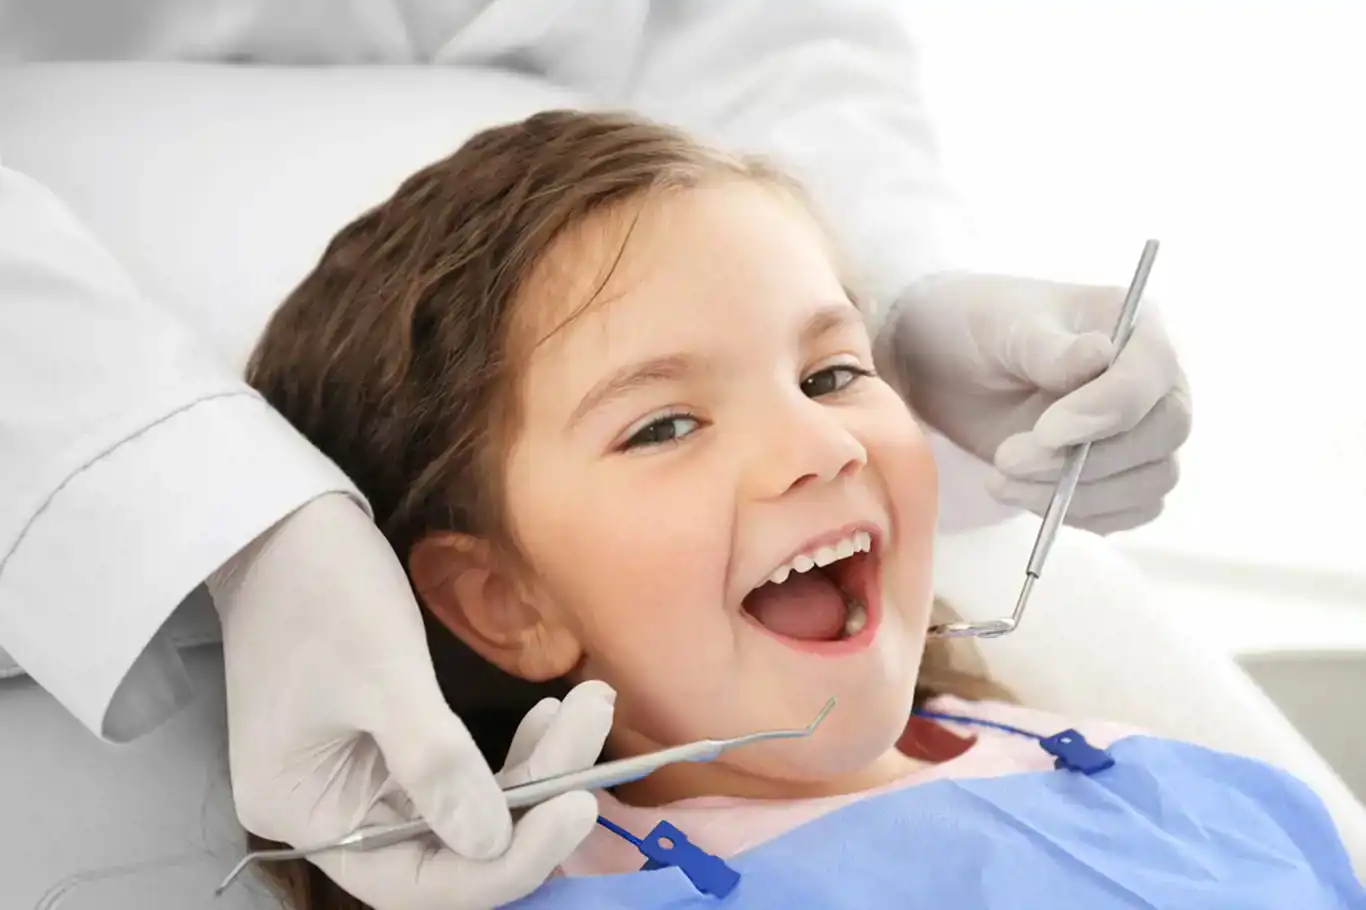 Çocuklarda diş çürüğü problemi neden olur?